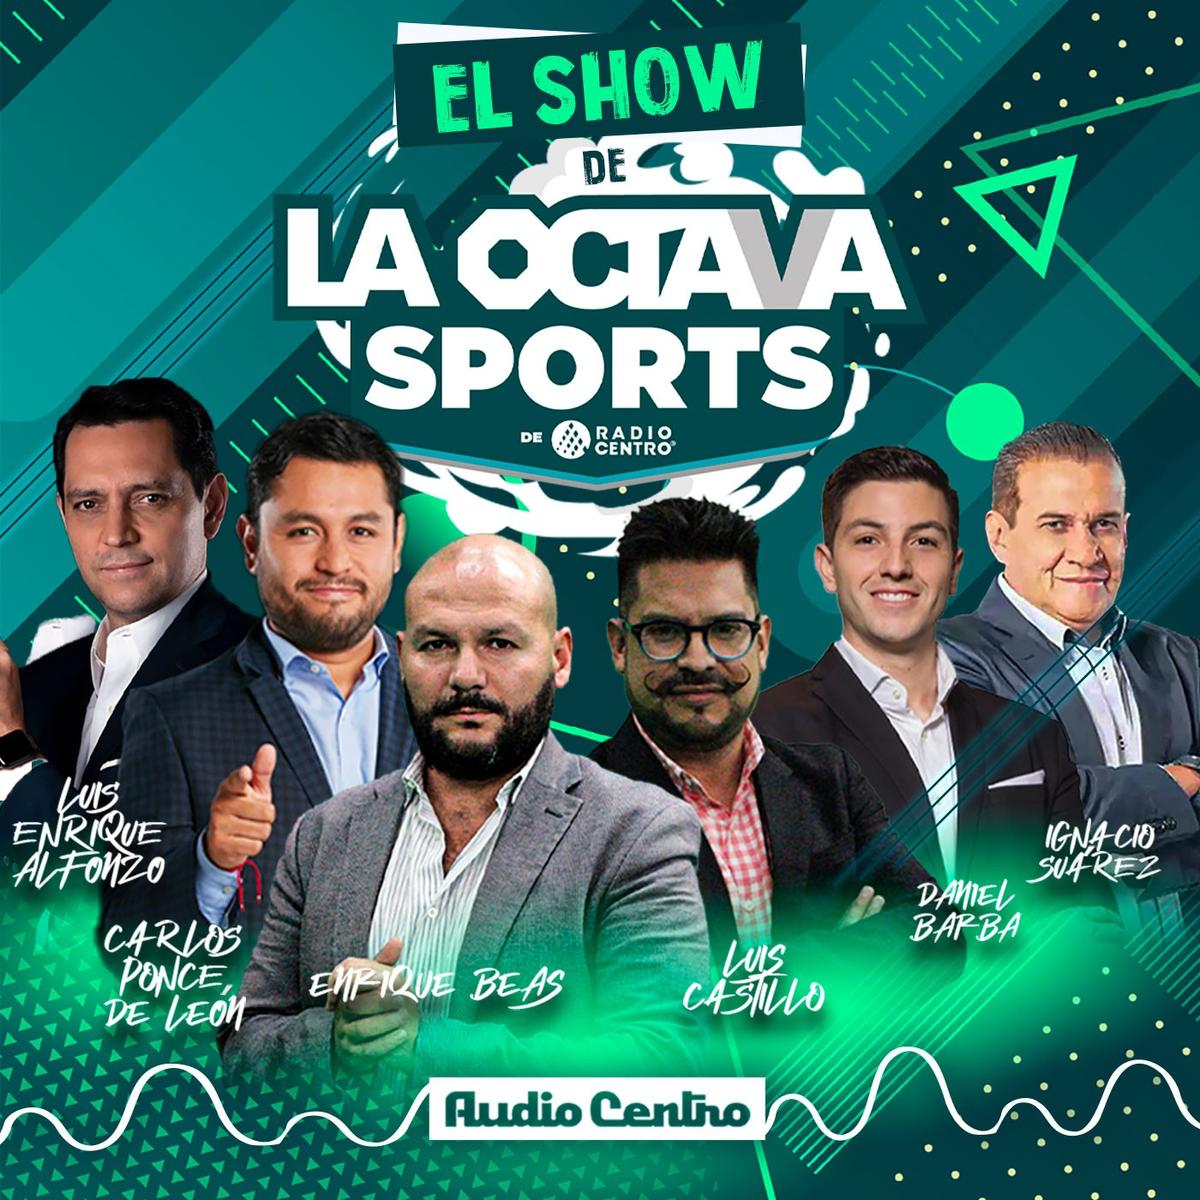 El Show de la Octava Sports